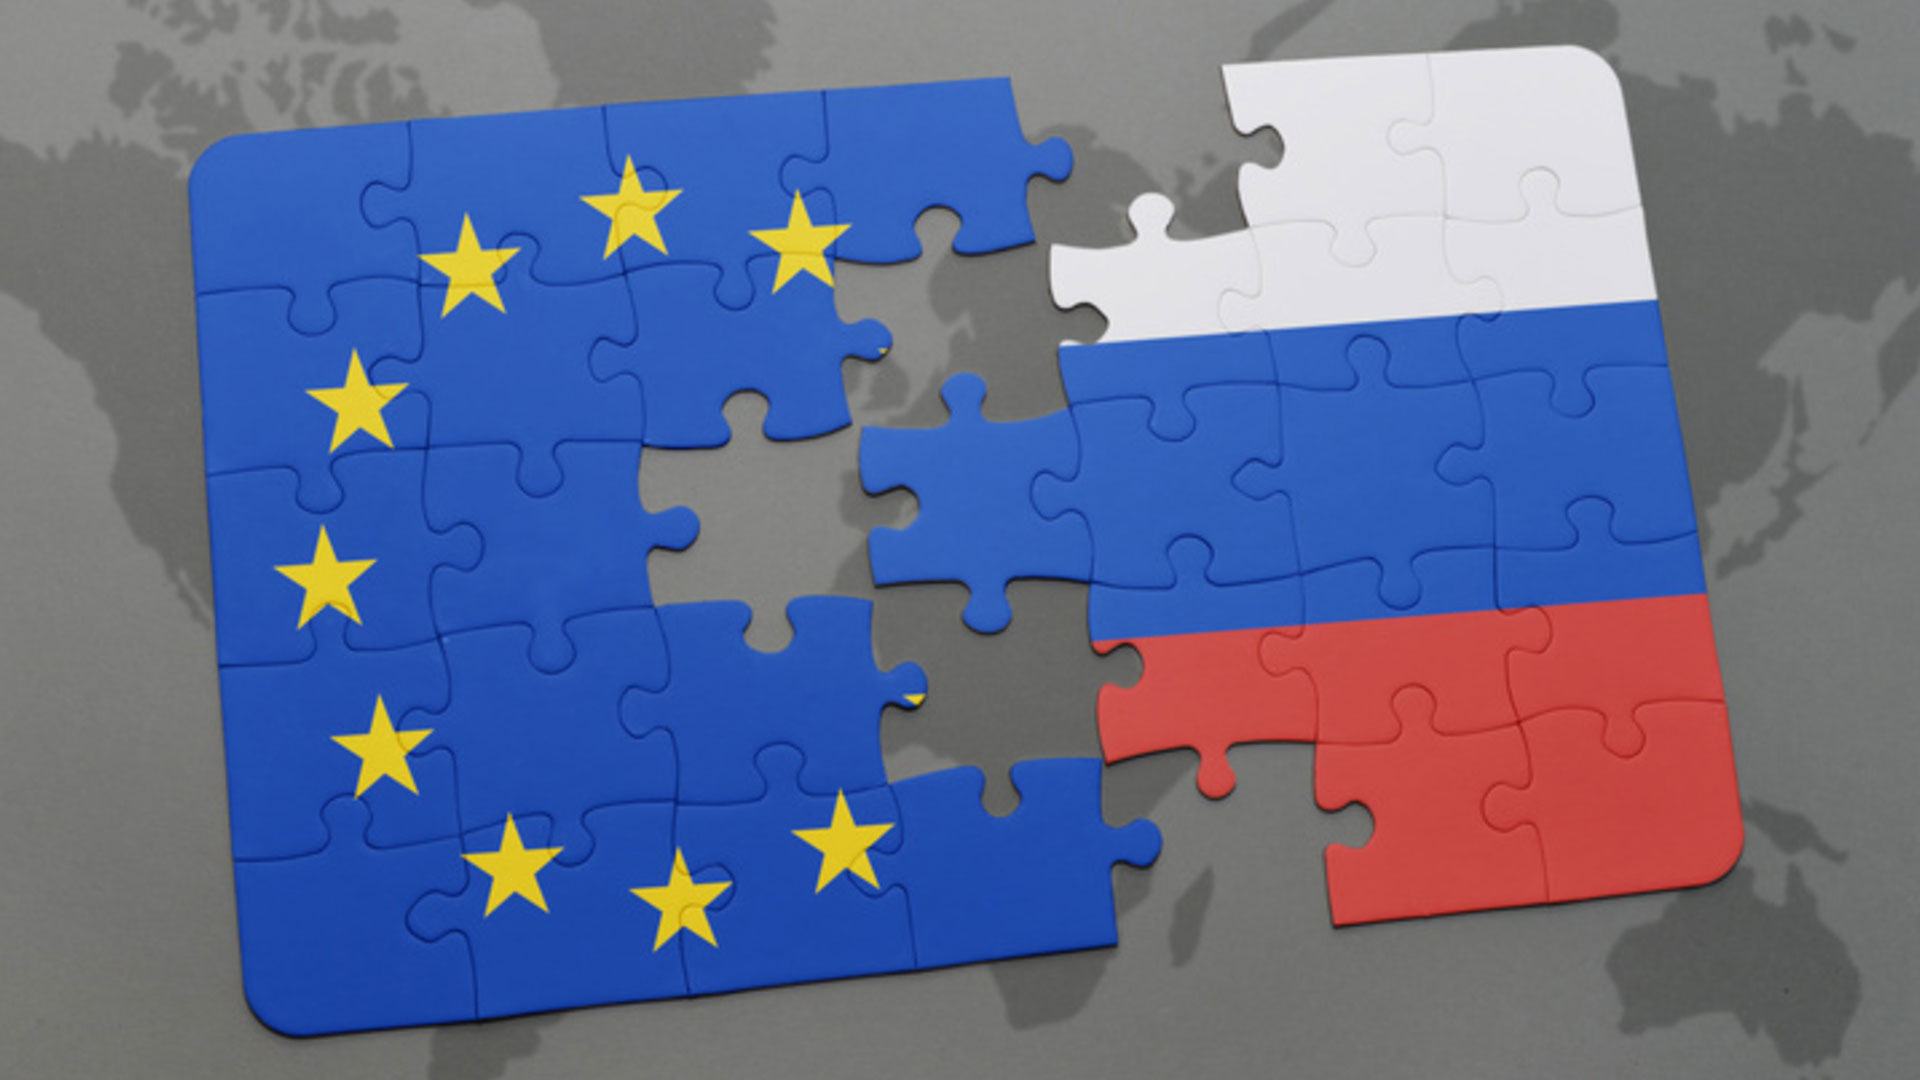 Rusya Fransa ilişkileri ve Avrupa Birliği’nin geleceği